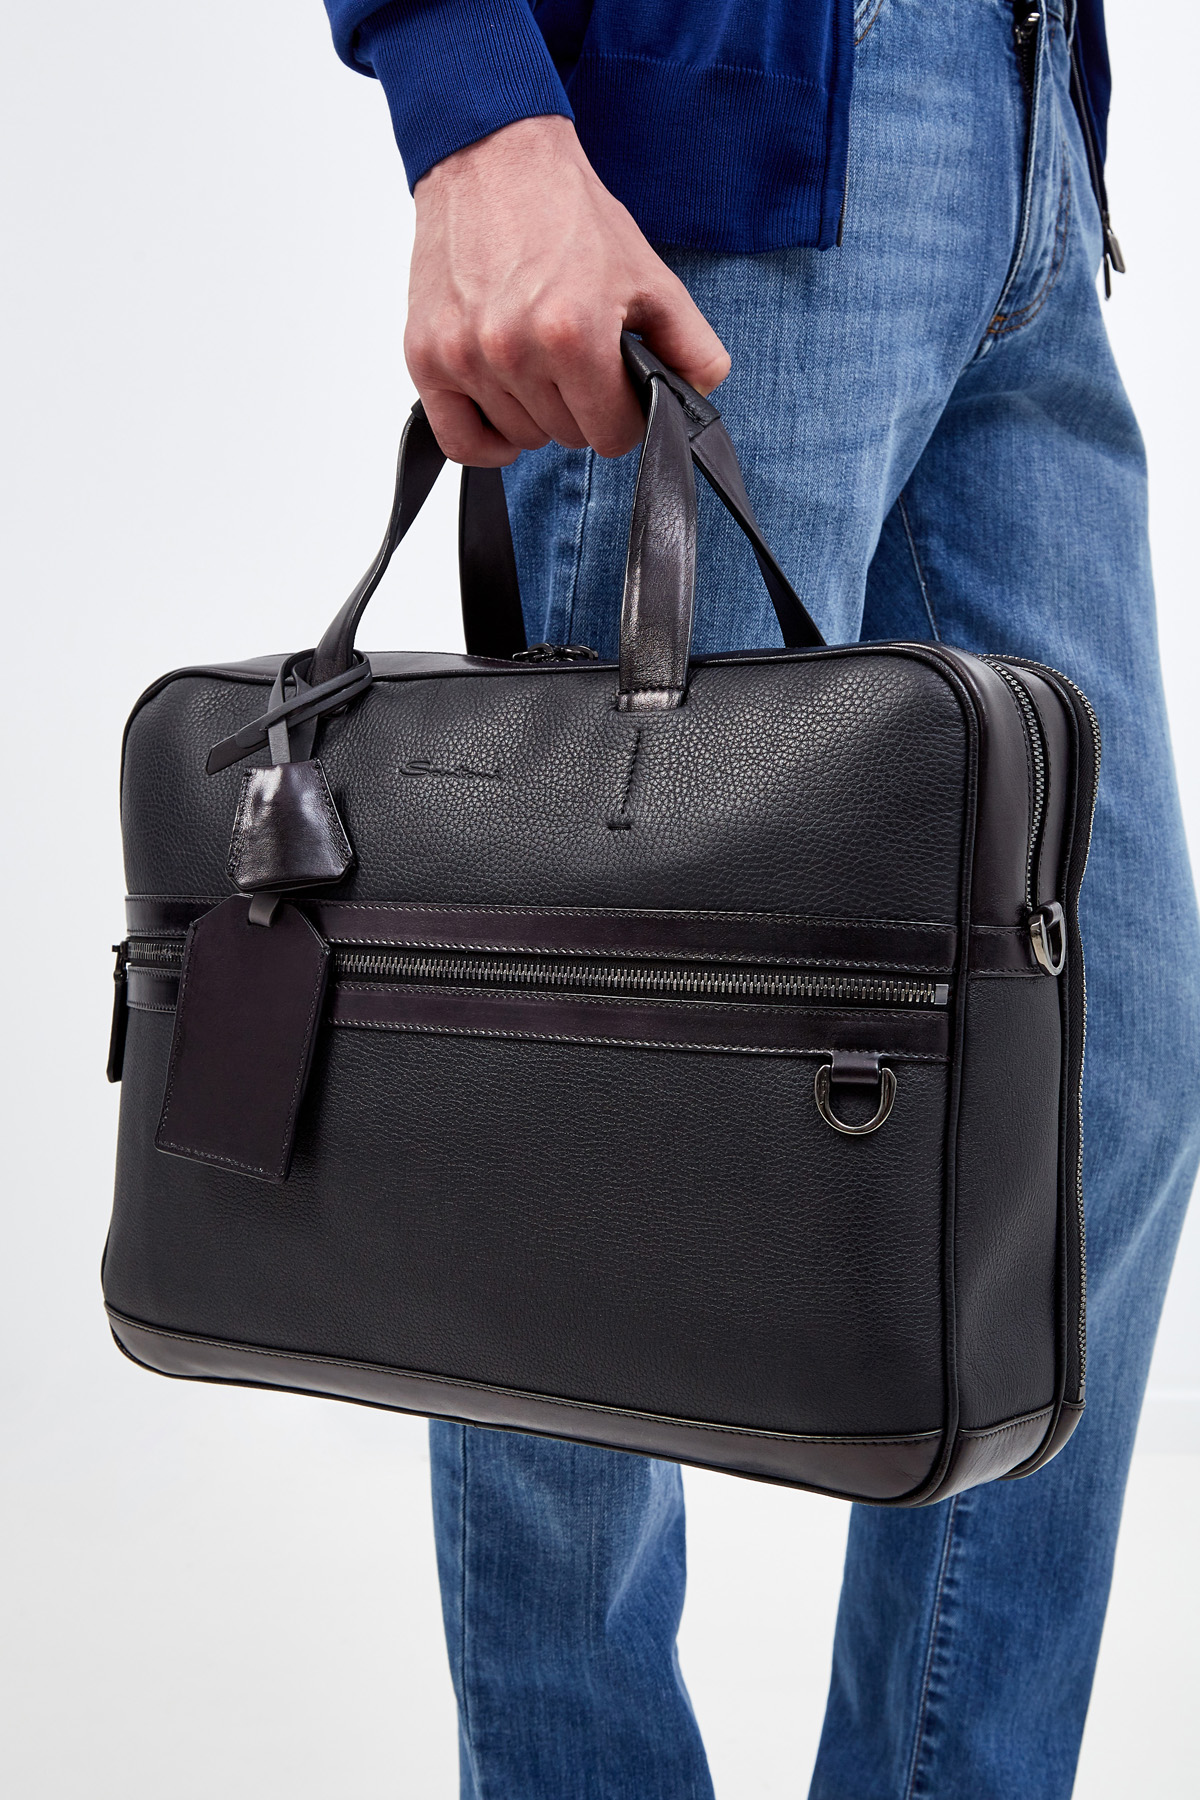 Кожаная сумка с карманом для бумаг А4 и съемным плечевым ремнем SANTONI, цвет черный, размер 36;38.5 - фото 2